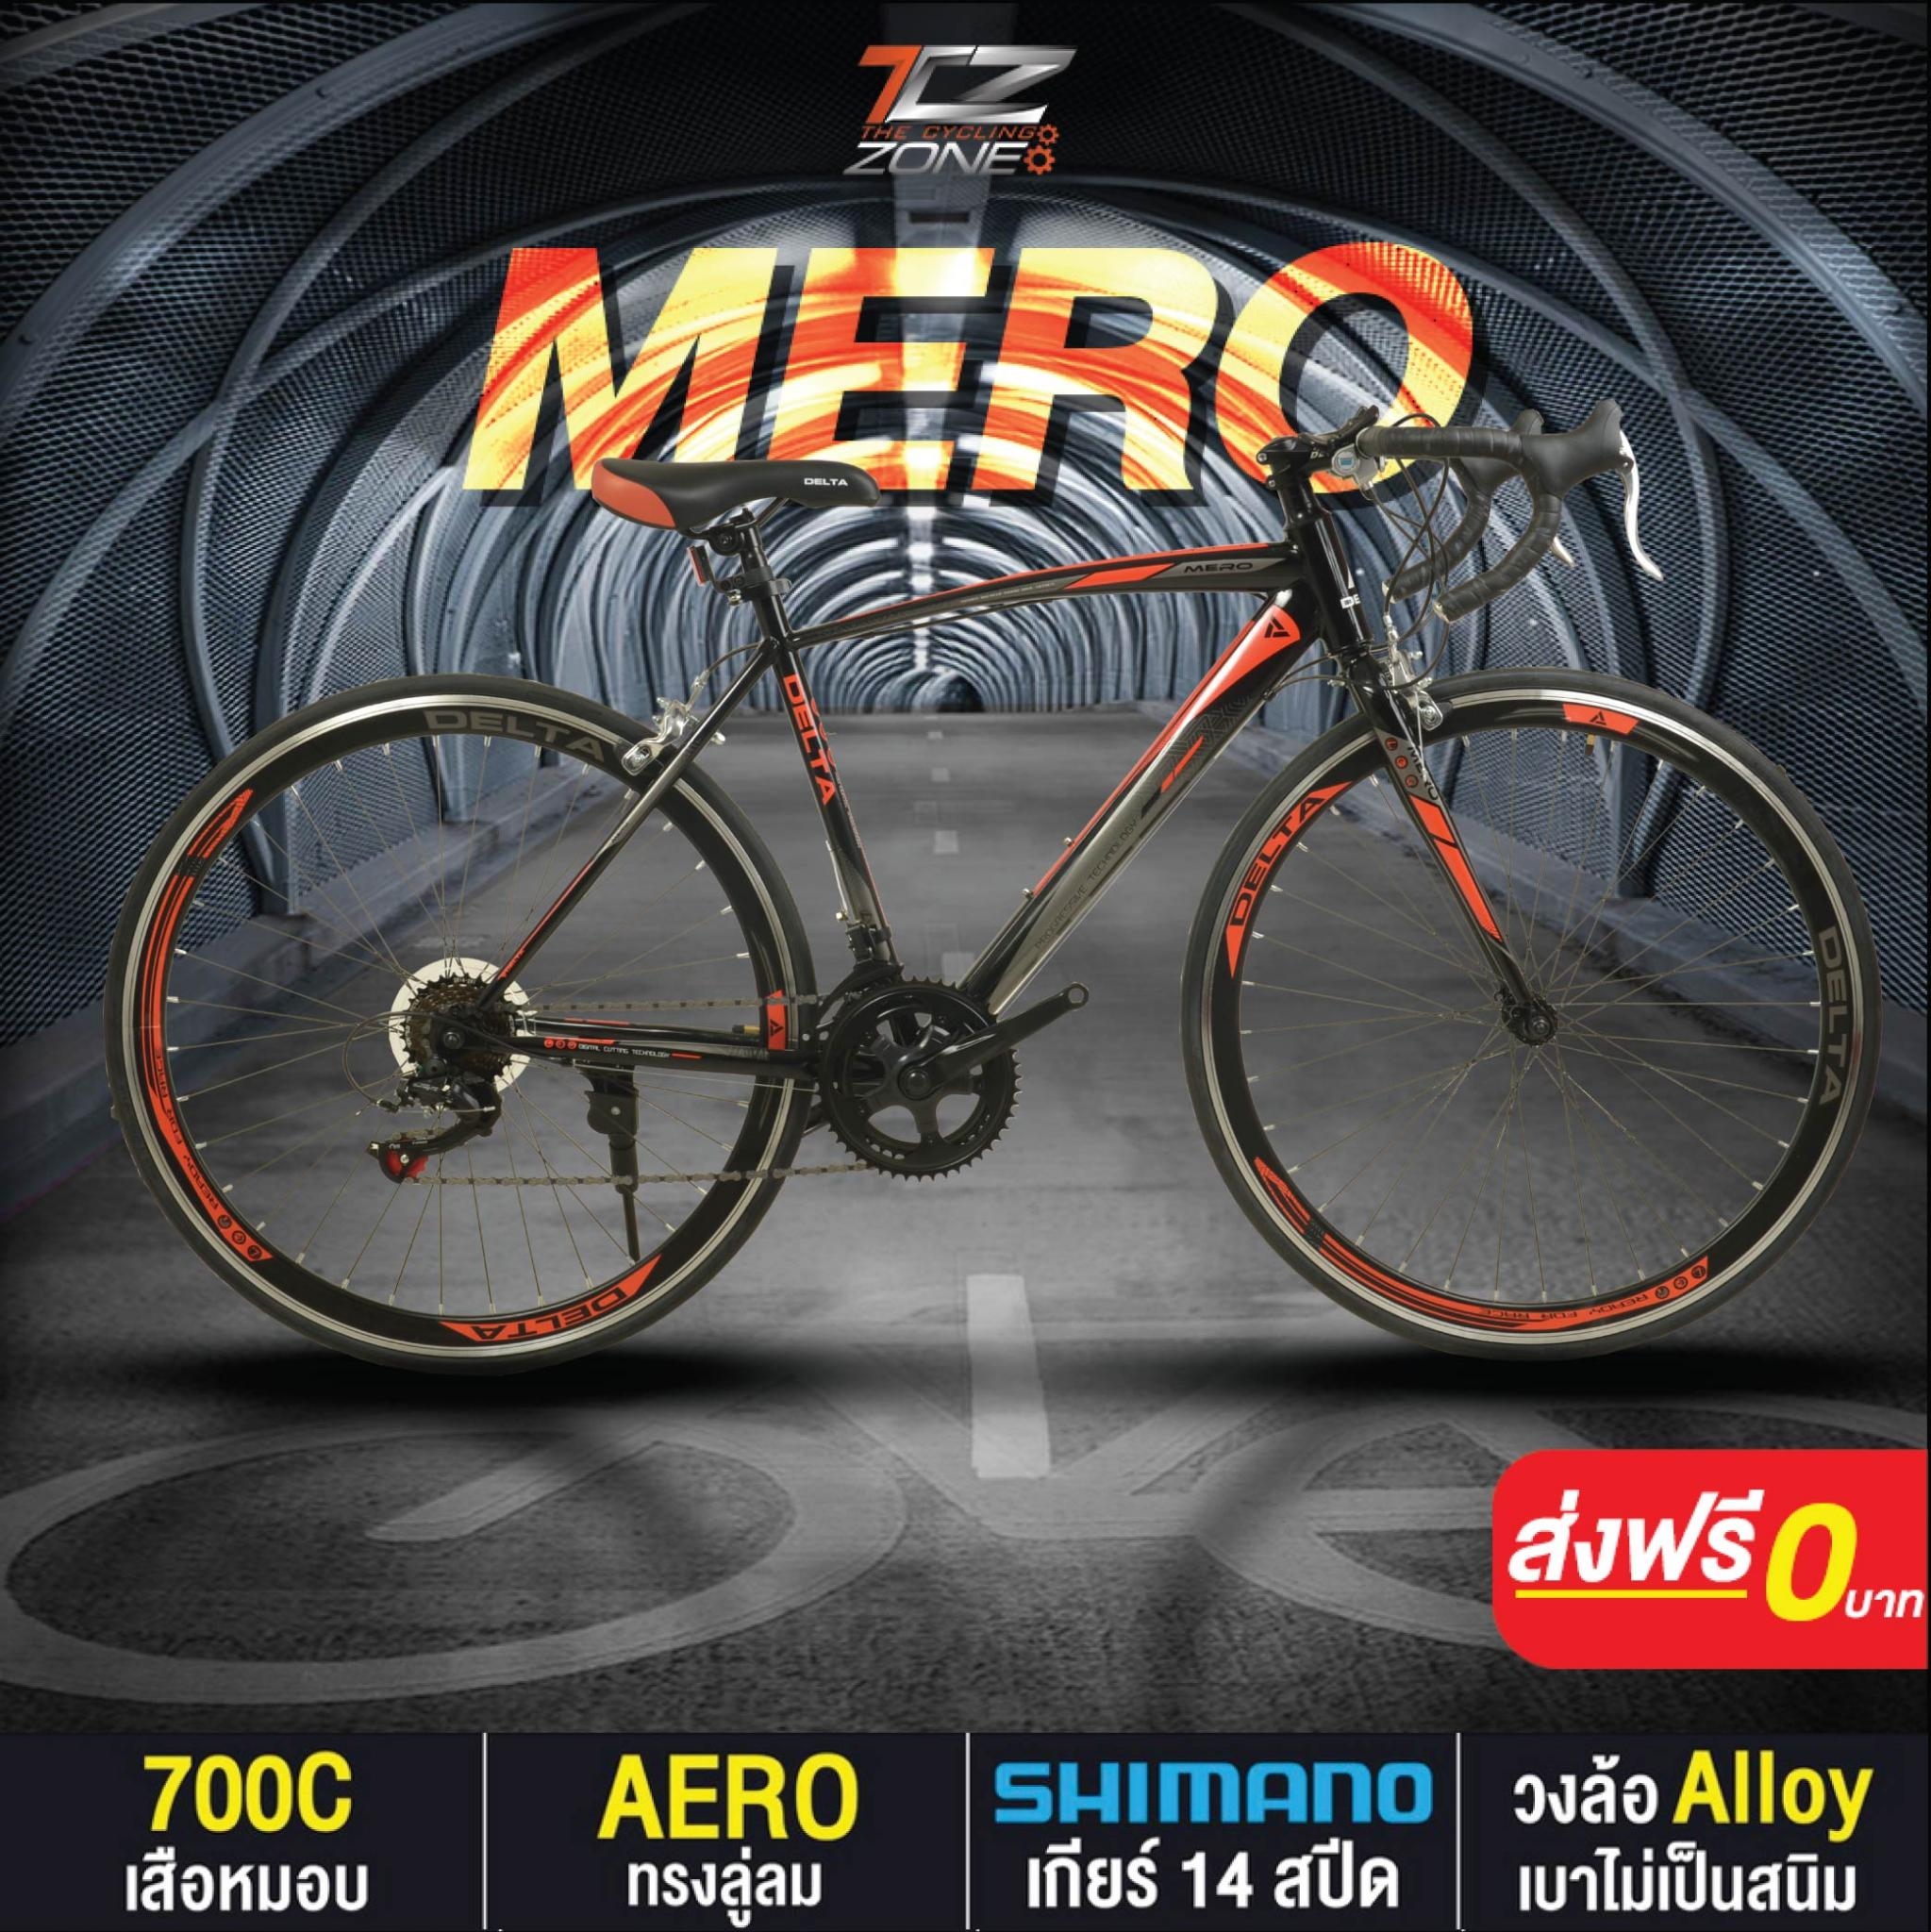 จักรยานเสือหมอบ 700C / DELTA เกียร์ SHIMANO 14 สปีด / ไซส์ 49 / รุ่น MERO สีส้ม By The Cycling Zone